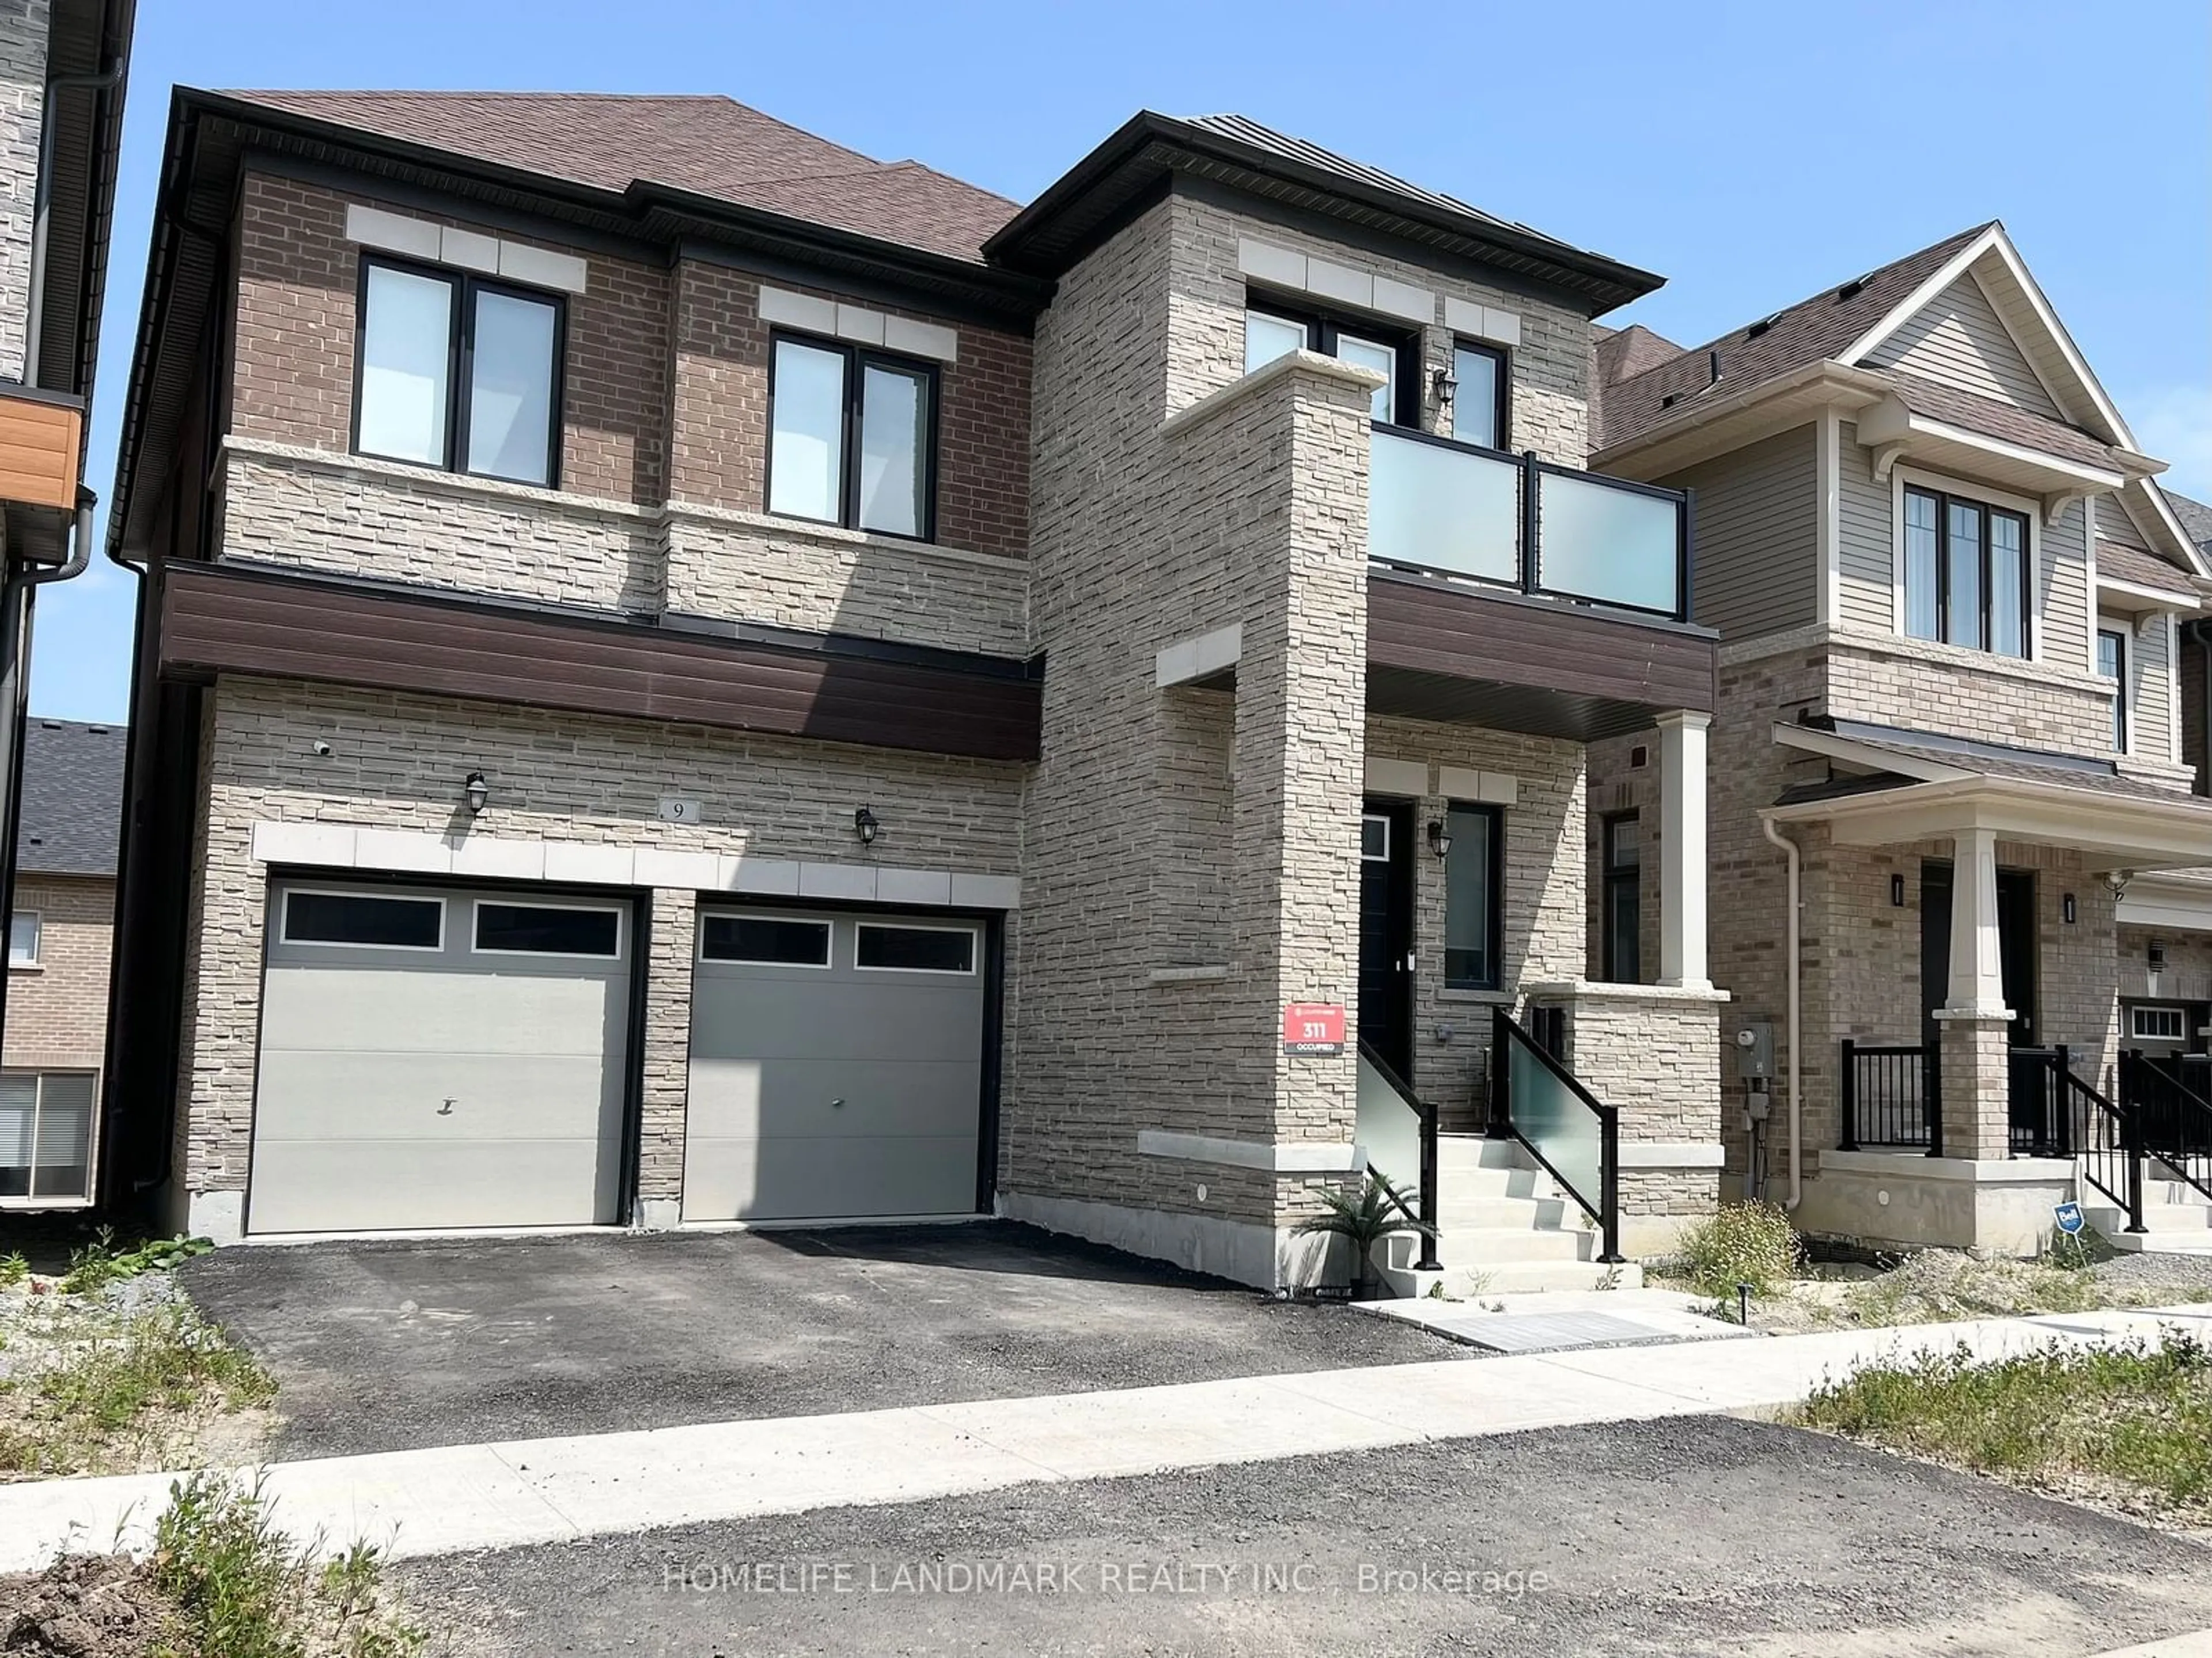 Home with brick exterior material for 9 Perigo Crt, Richmond Hill Ontario L4E 1K3